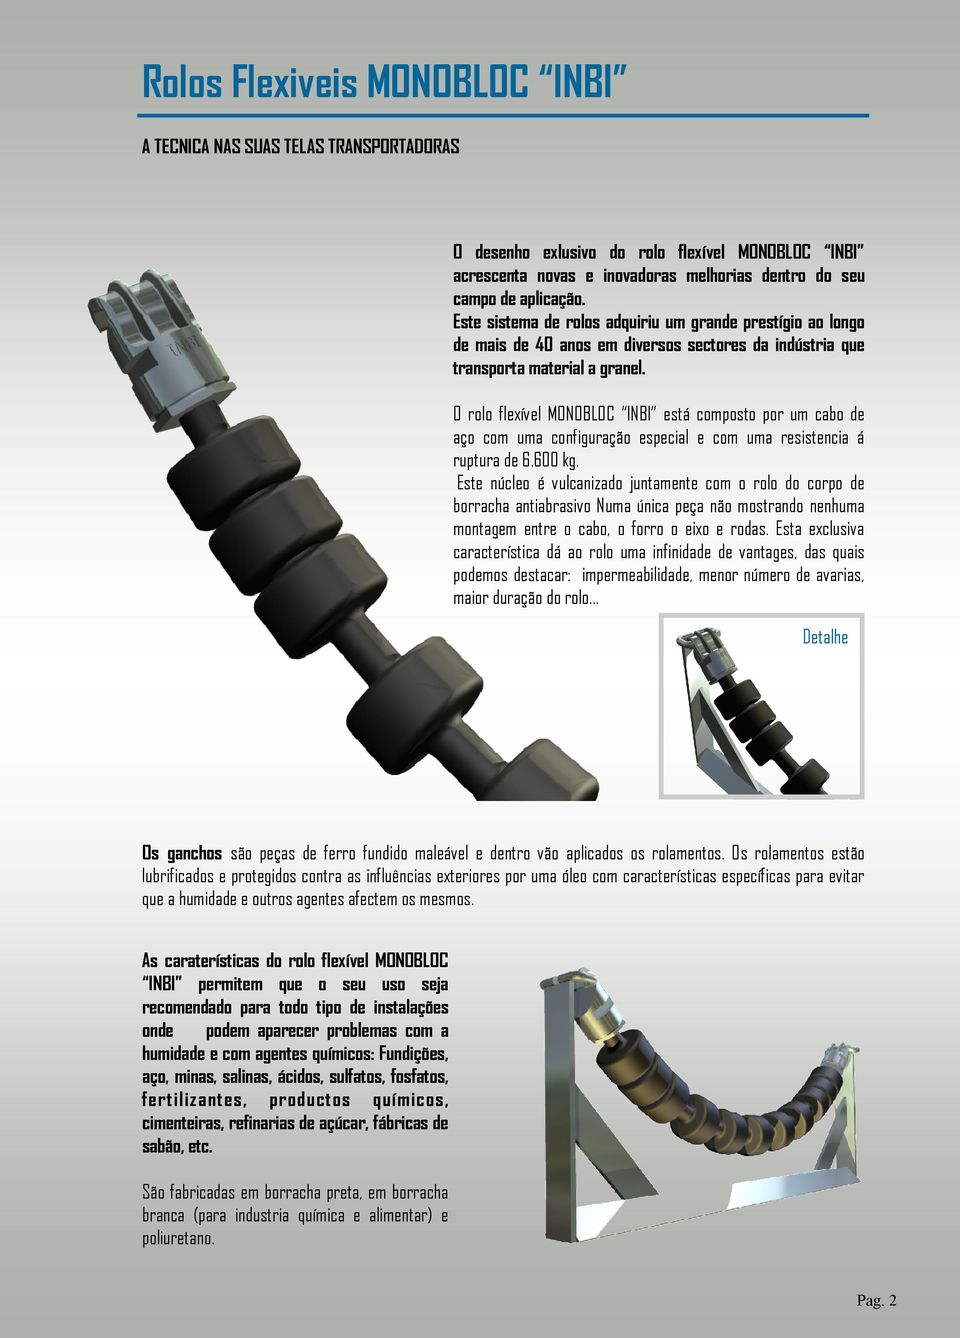 O rolo flexível MONOBLOC INBI está composto por um cabo de aço com uma configuração especial e com uma resistencia á ruptura de 6.600 kg.